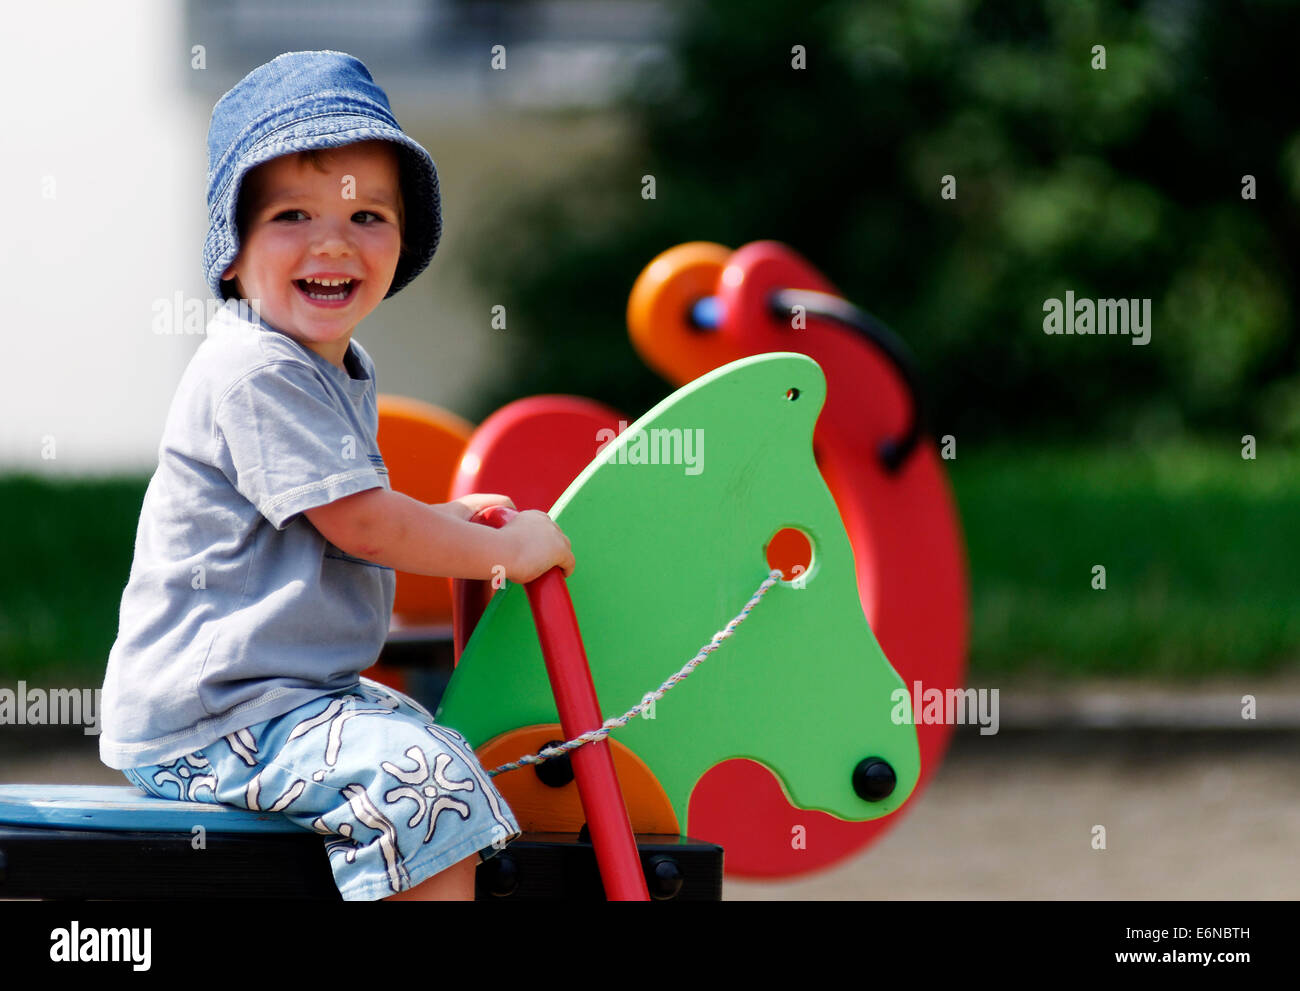 Un sourire heureux jeune garçon jouant dans une aire de jeux Banque D'Images